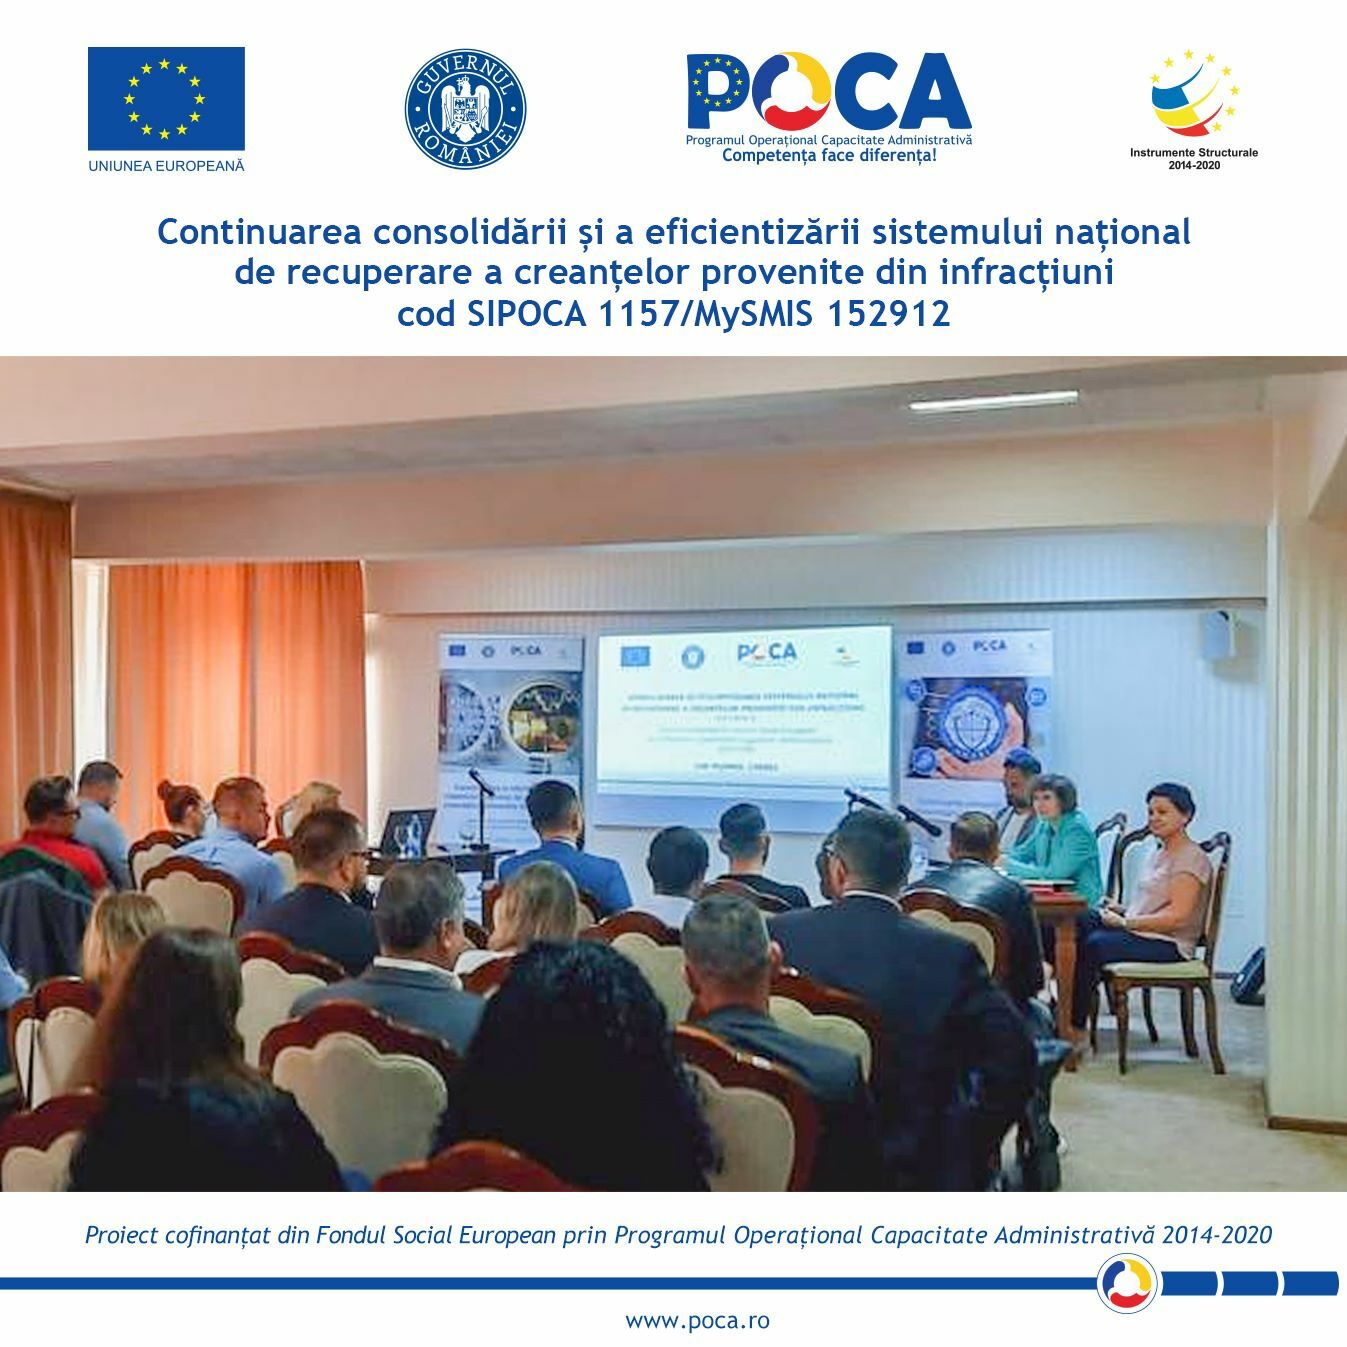 Conferința regională organizată la Oradea în cadrul proiectului „Continuarea consolidării și a eficientizării sistemului național de recuperare a creanțelor provenite din infracțiuni”